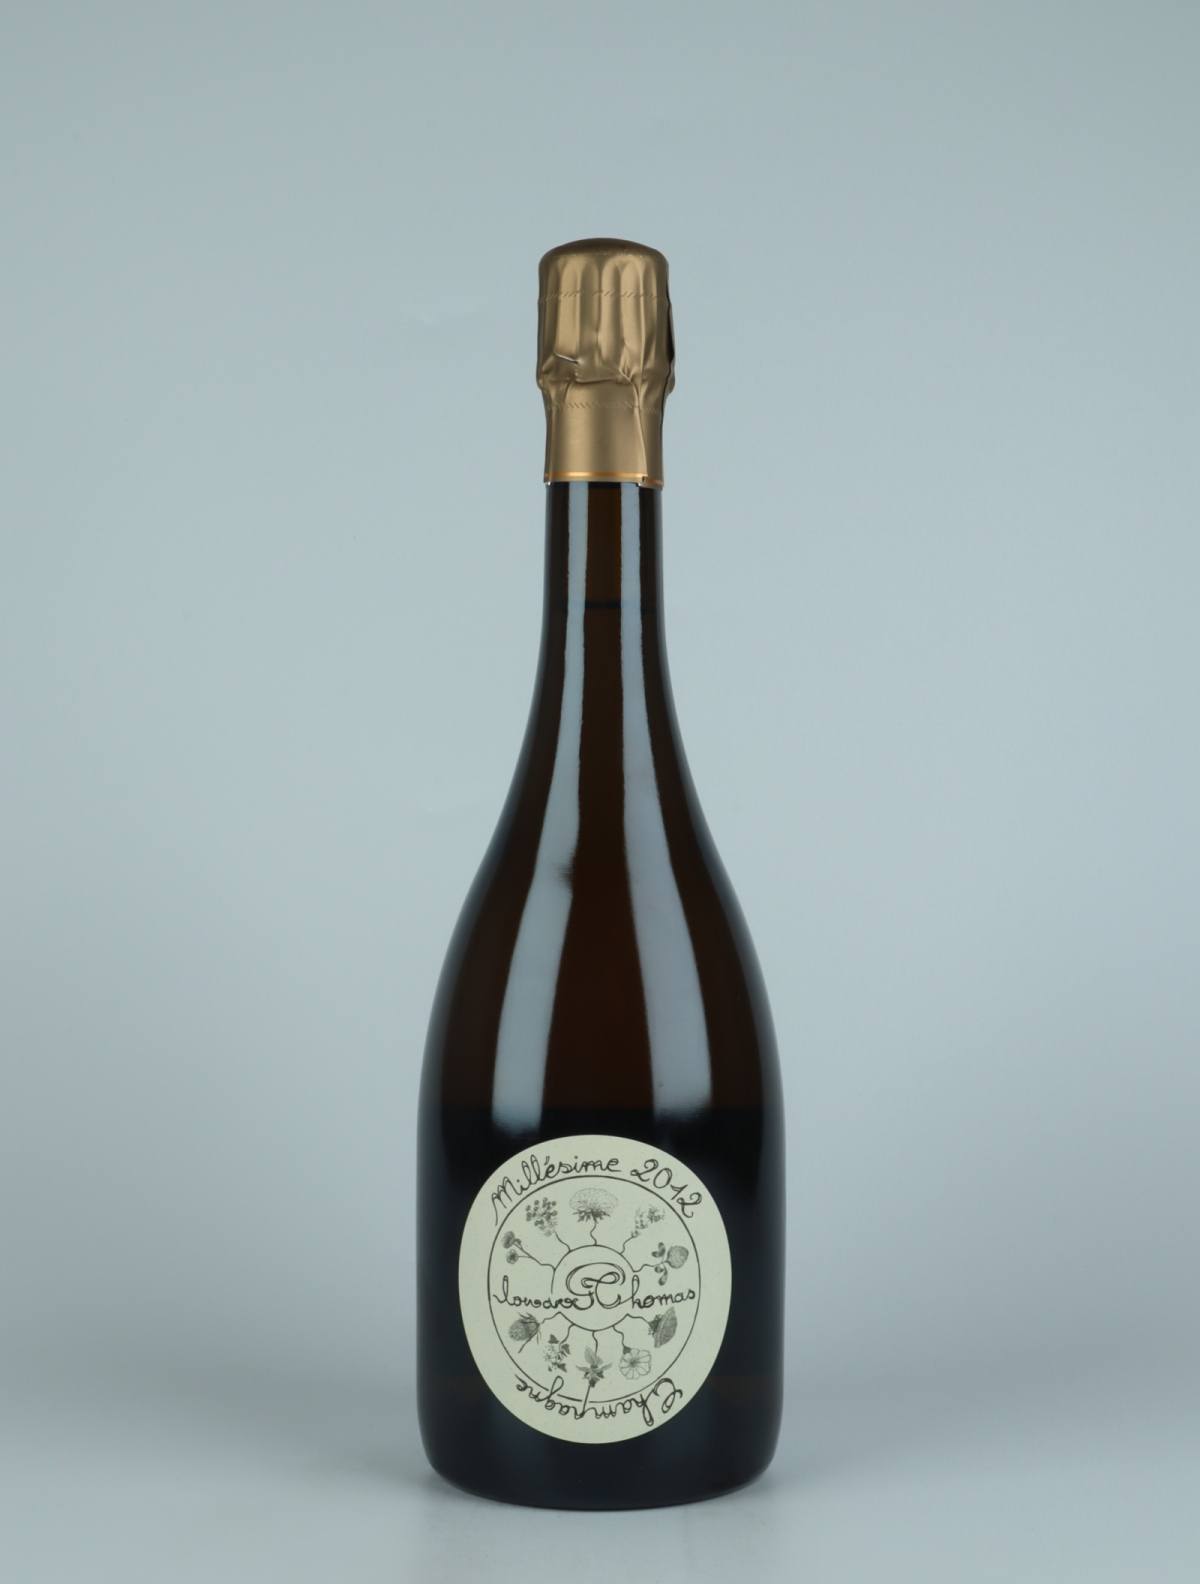 En flaske 2012 Chamery 1. Cru - Dégorgement Tardif Mousserende fra Thomas Perseval, Champagne i Frankrig